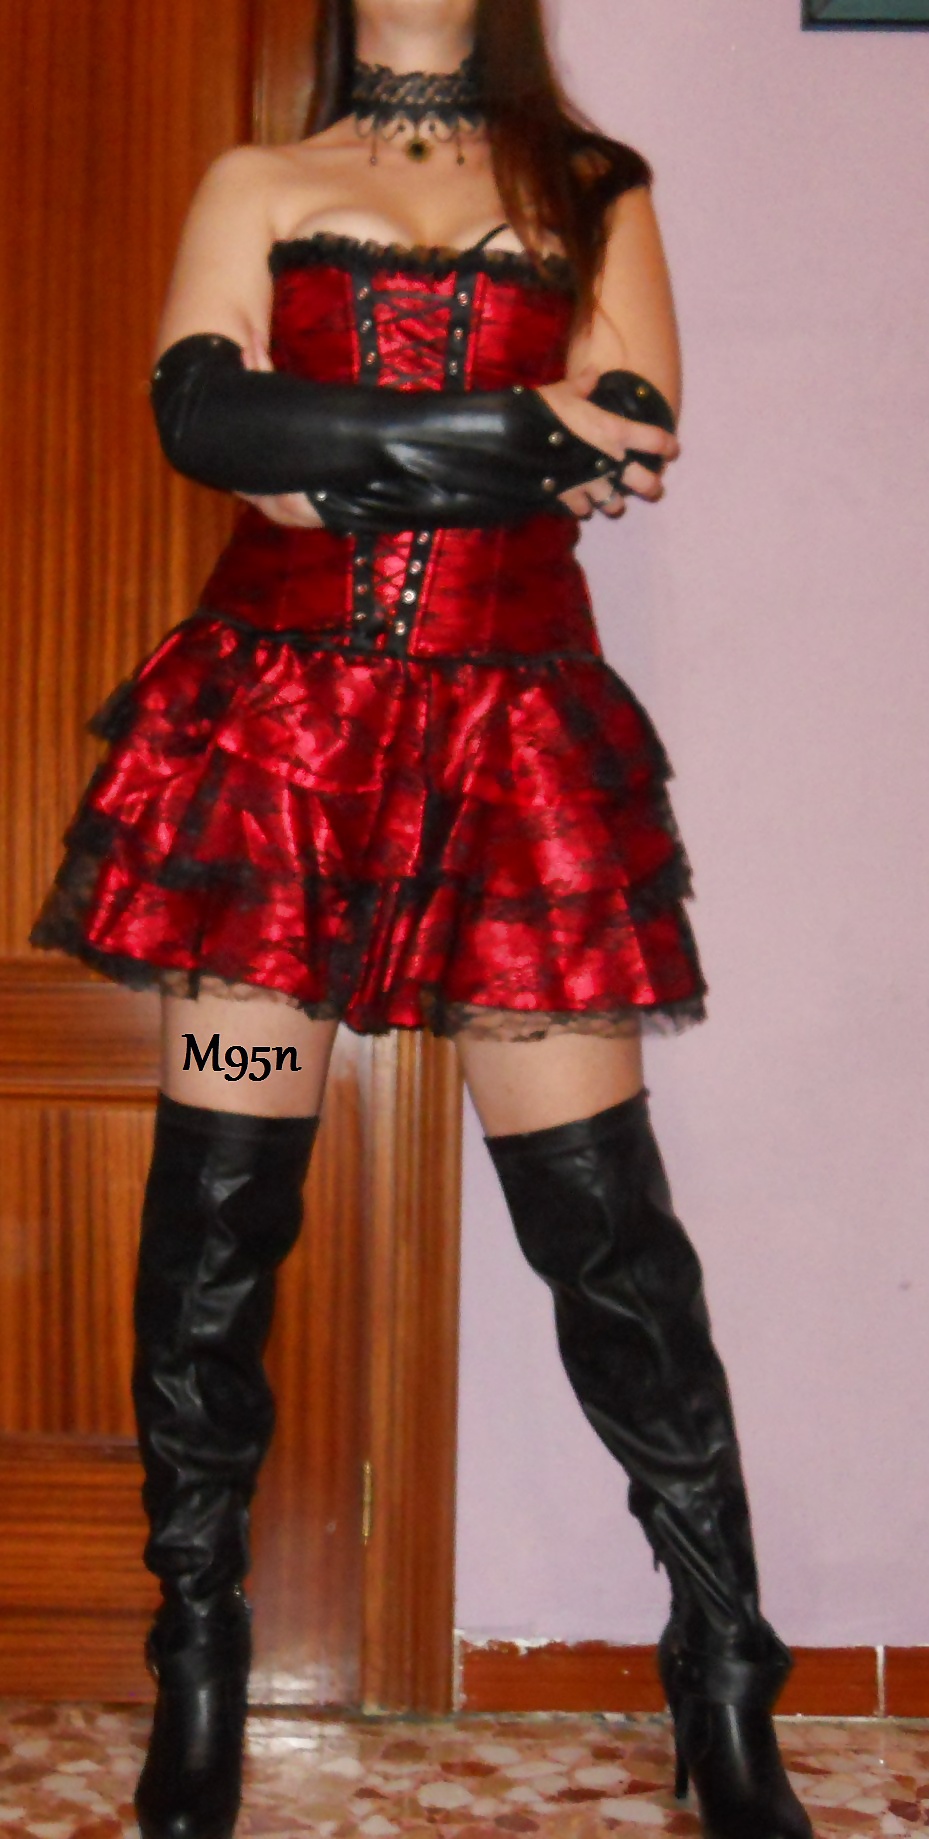 Con mi corset y falda roja y negra !!!
 #32842565